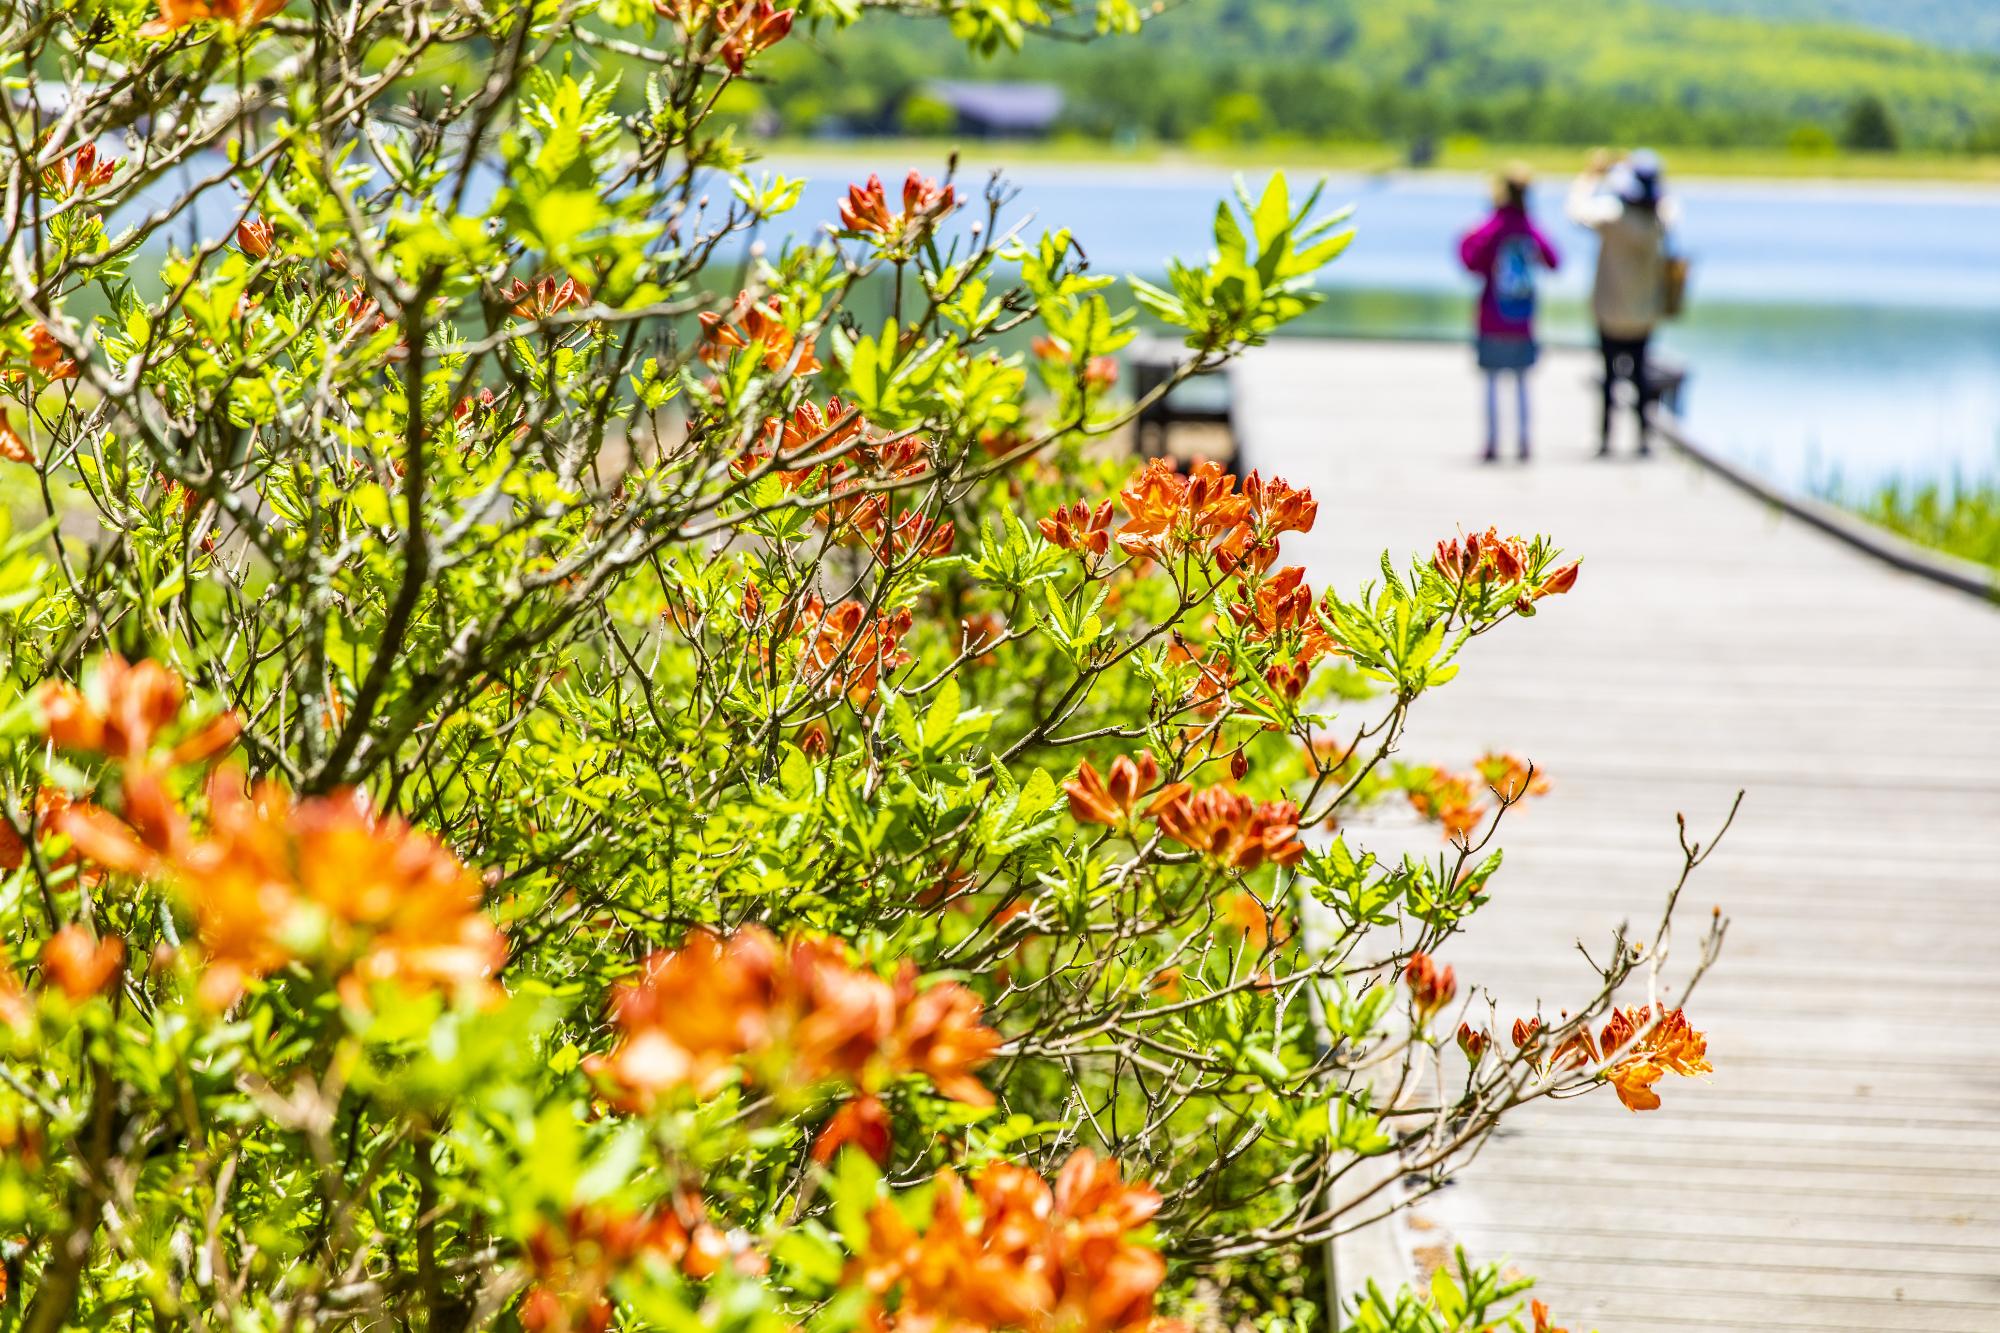 女神湖へと伸びている桟橋の横にある木々にオレンジ色の花が咲いている写真